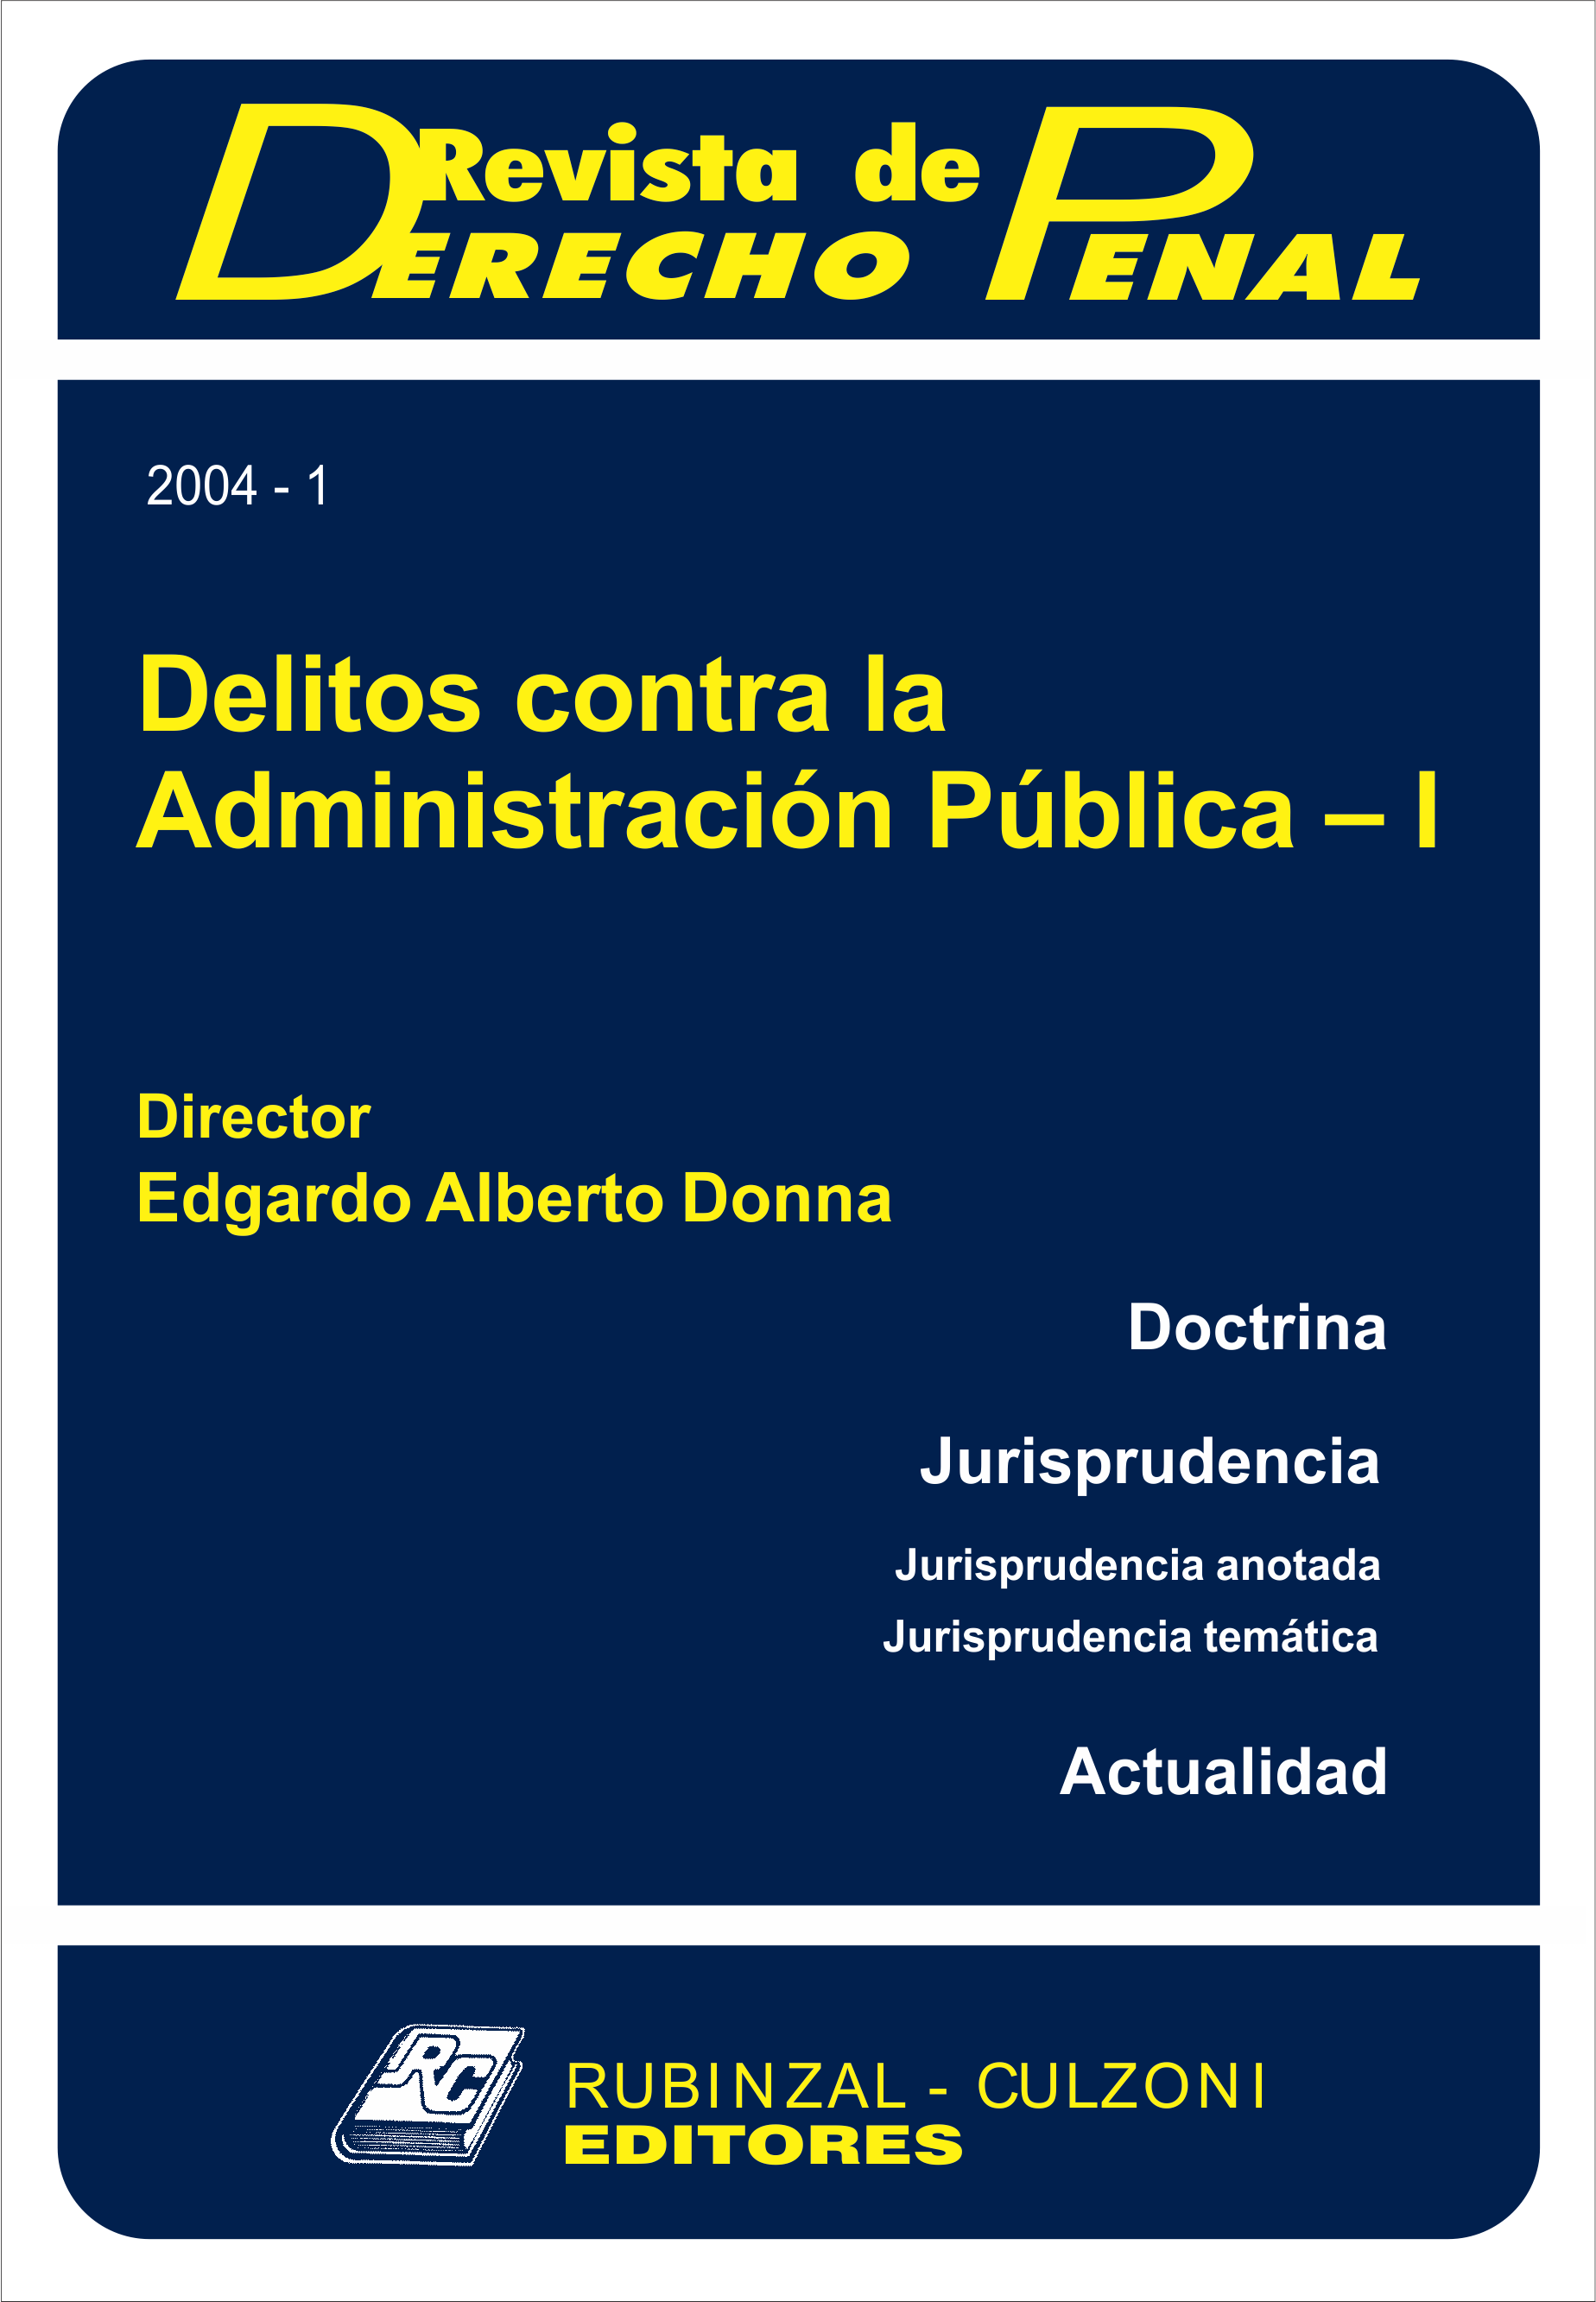 Revista de Derecho Penal - Delitos contra la Administración Pública - I